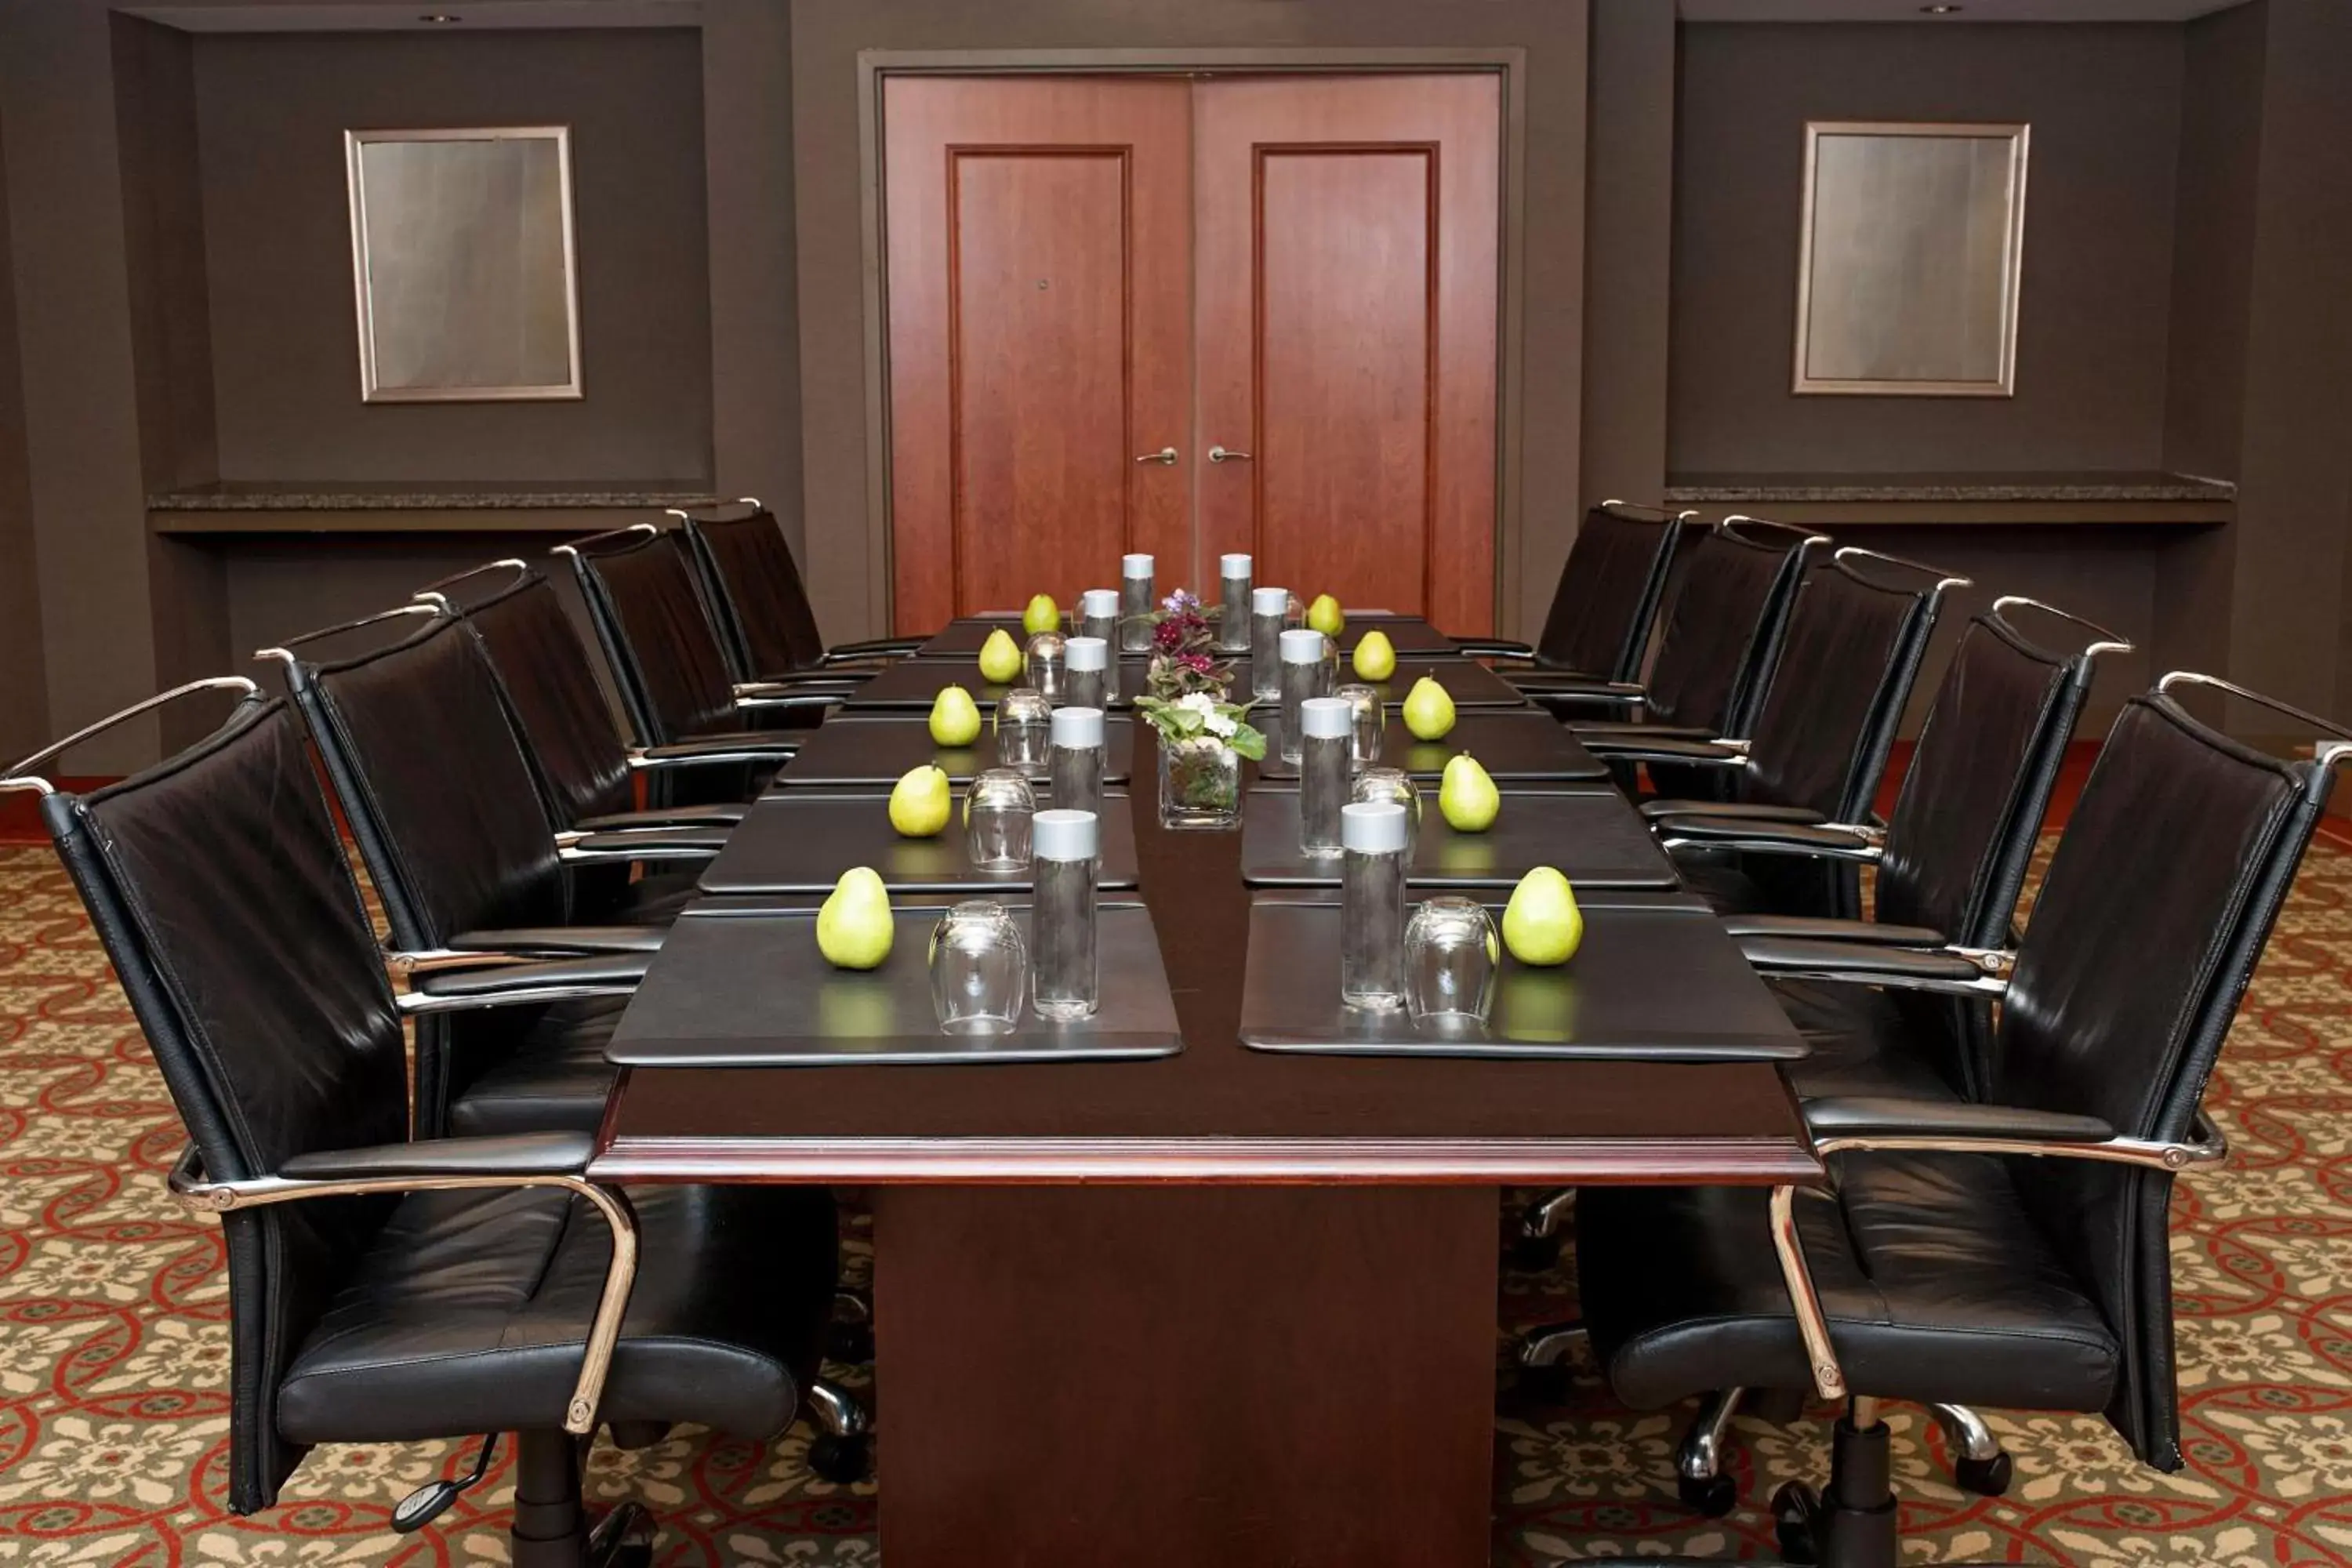 Meeting/conference room in Sheraton Niagara Falls